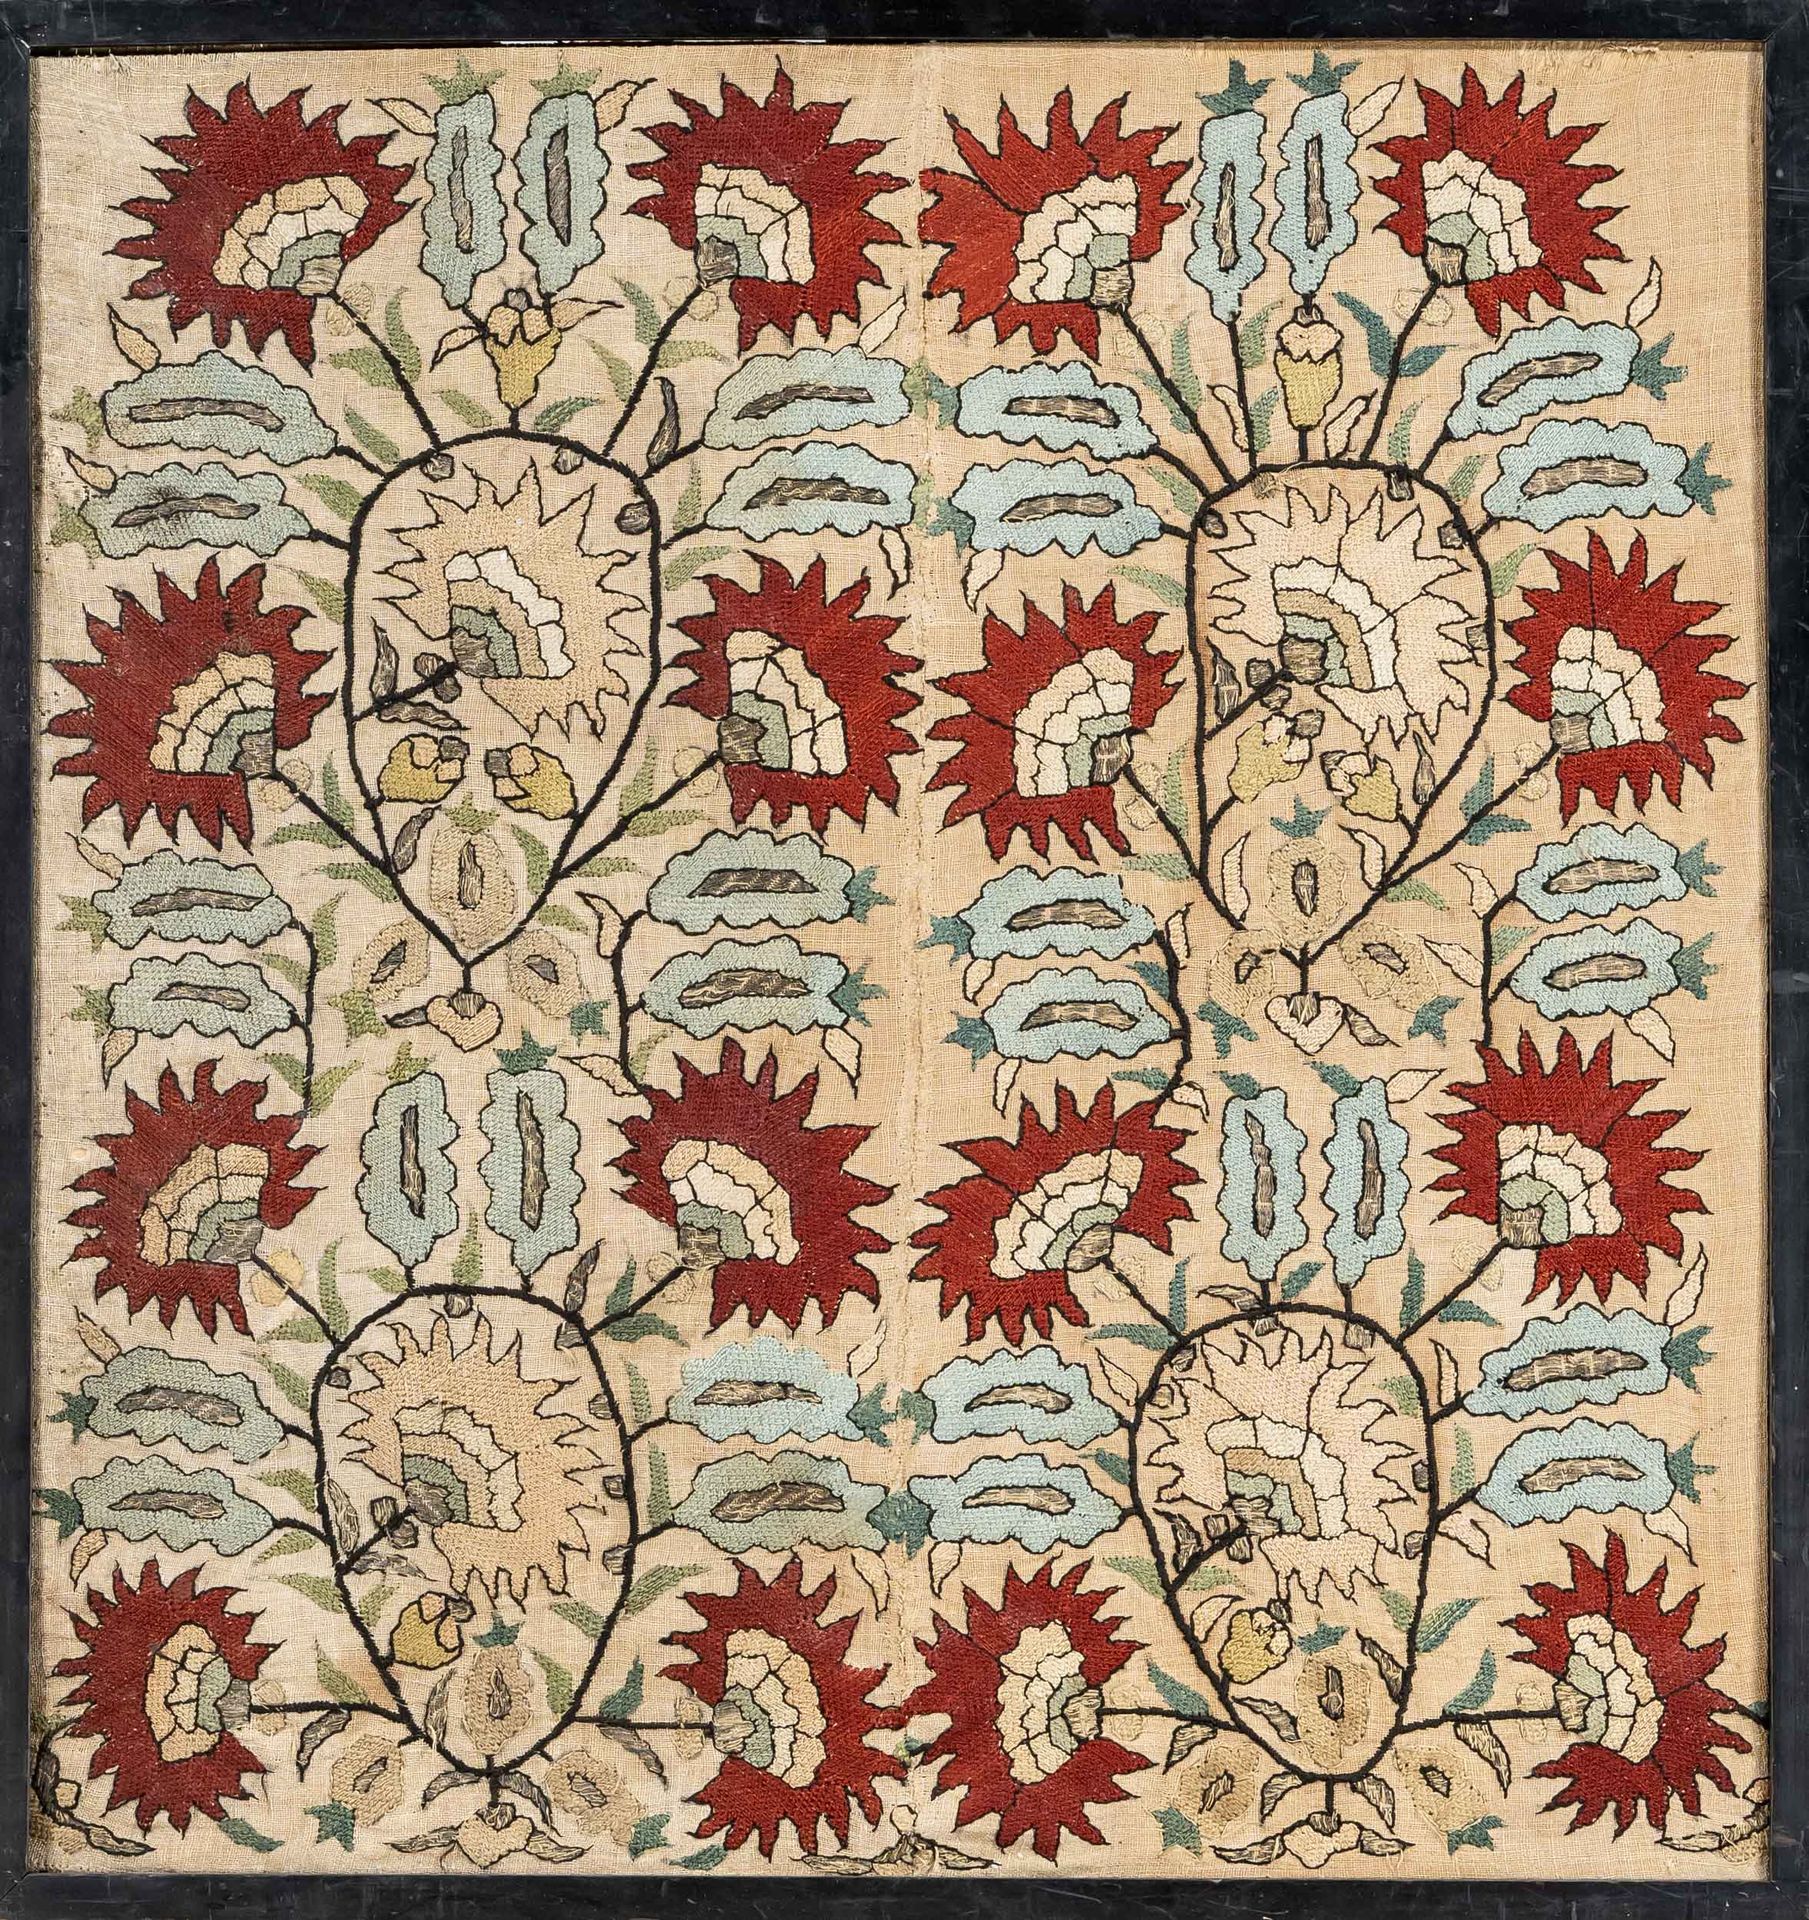 Null Bordado/textil enmarcado, finales del siglo XIX (¿Artes y Oficios?). Zarcil&hellip;